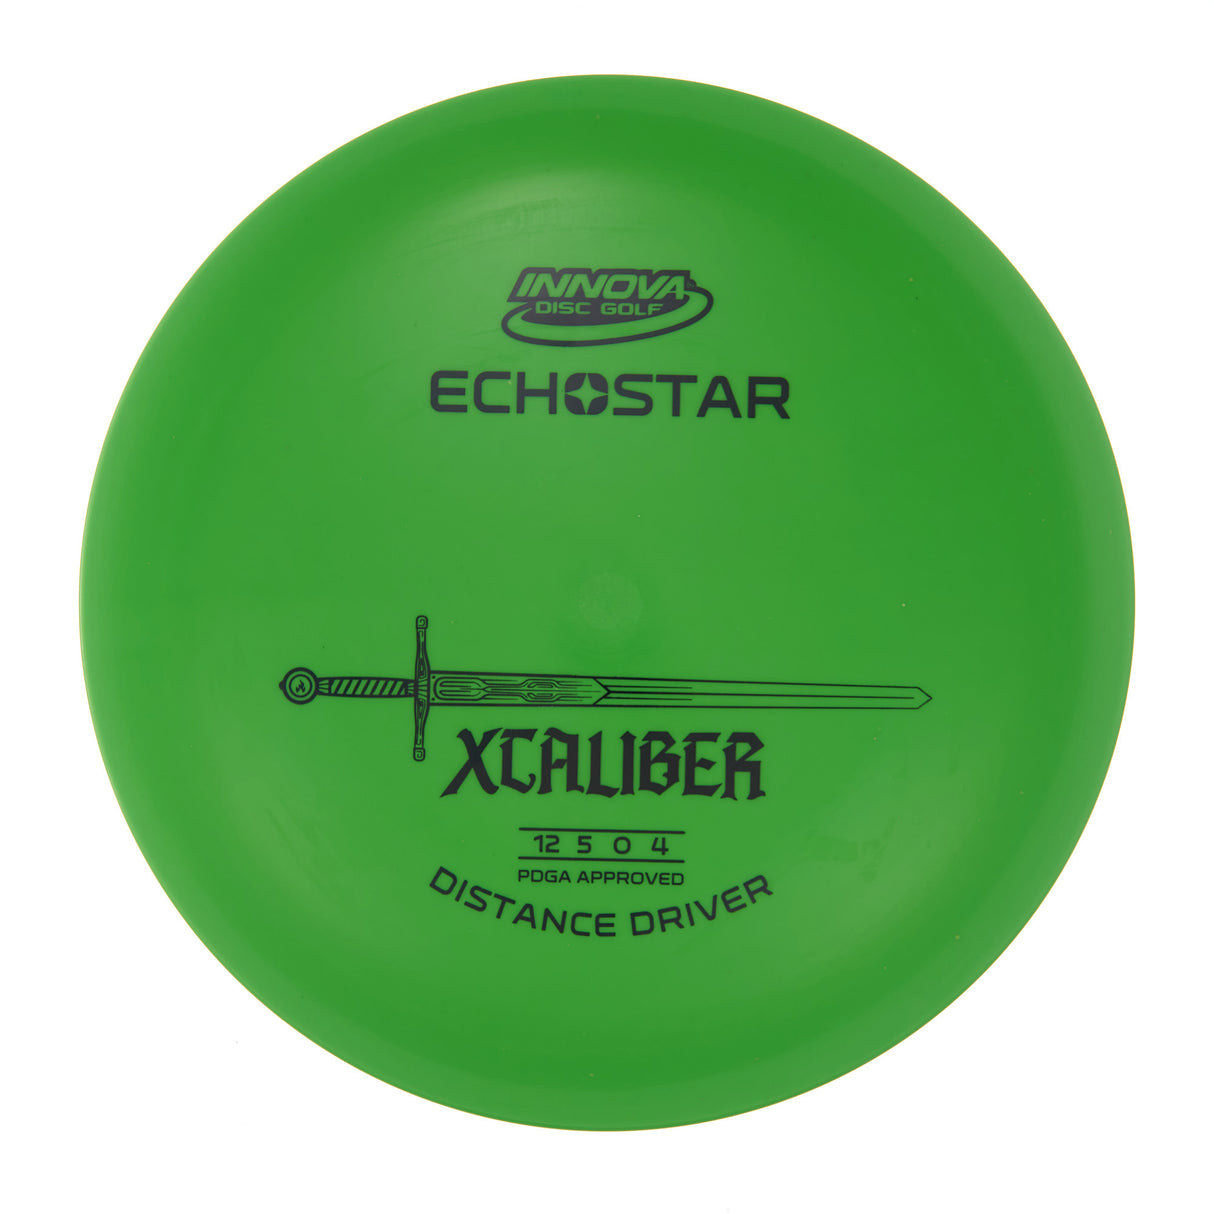 Innova XCaliber - Echo Star  173g | Style 0007